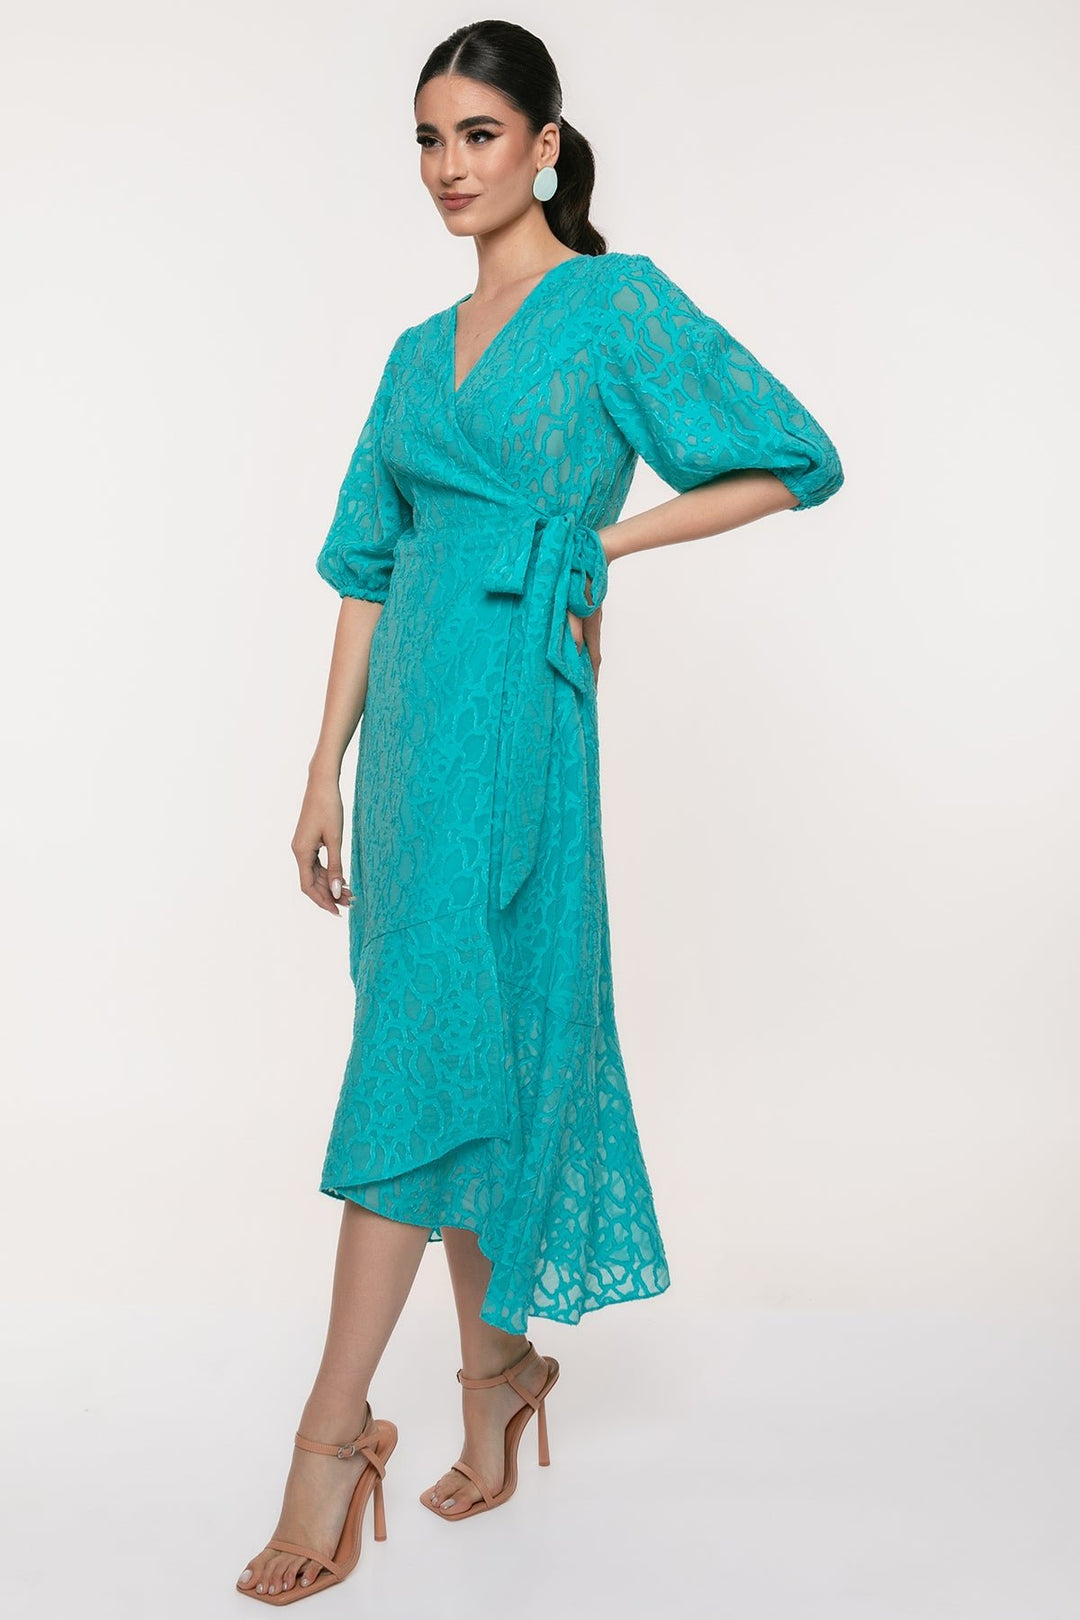 Φόρεμα μίντι κρουαζέ με αναγλυφο ύφασμα Coelia - A Collection Boutique